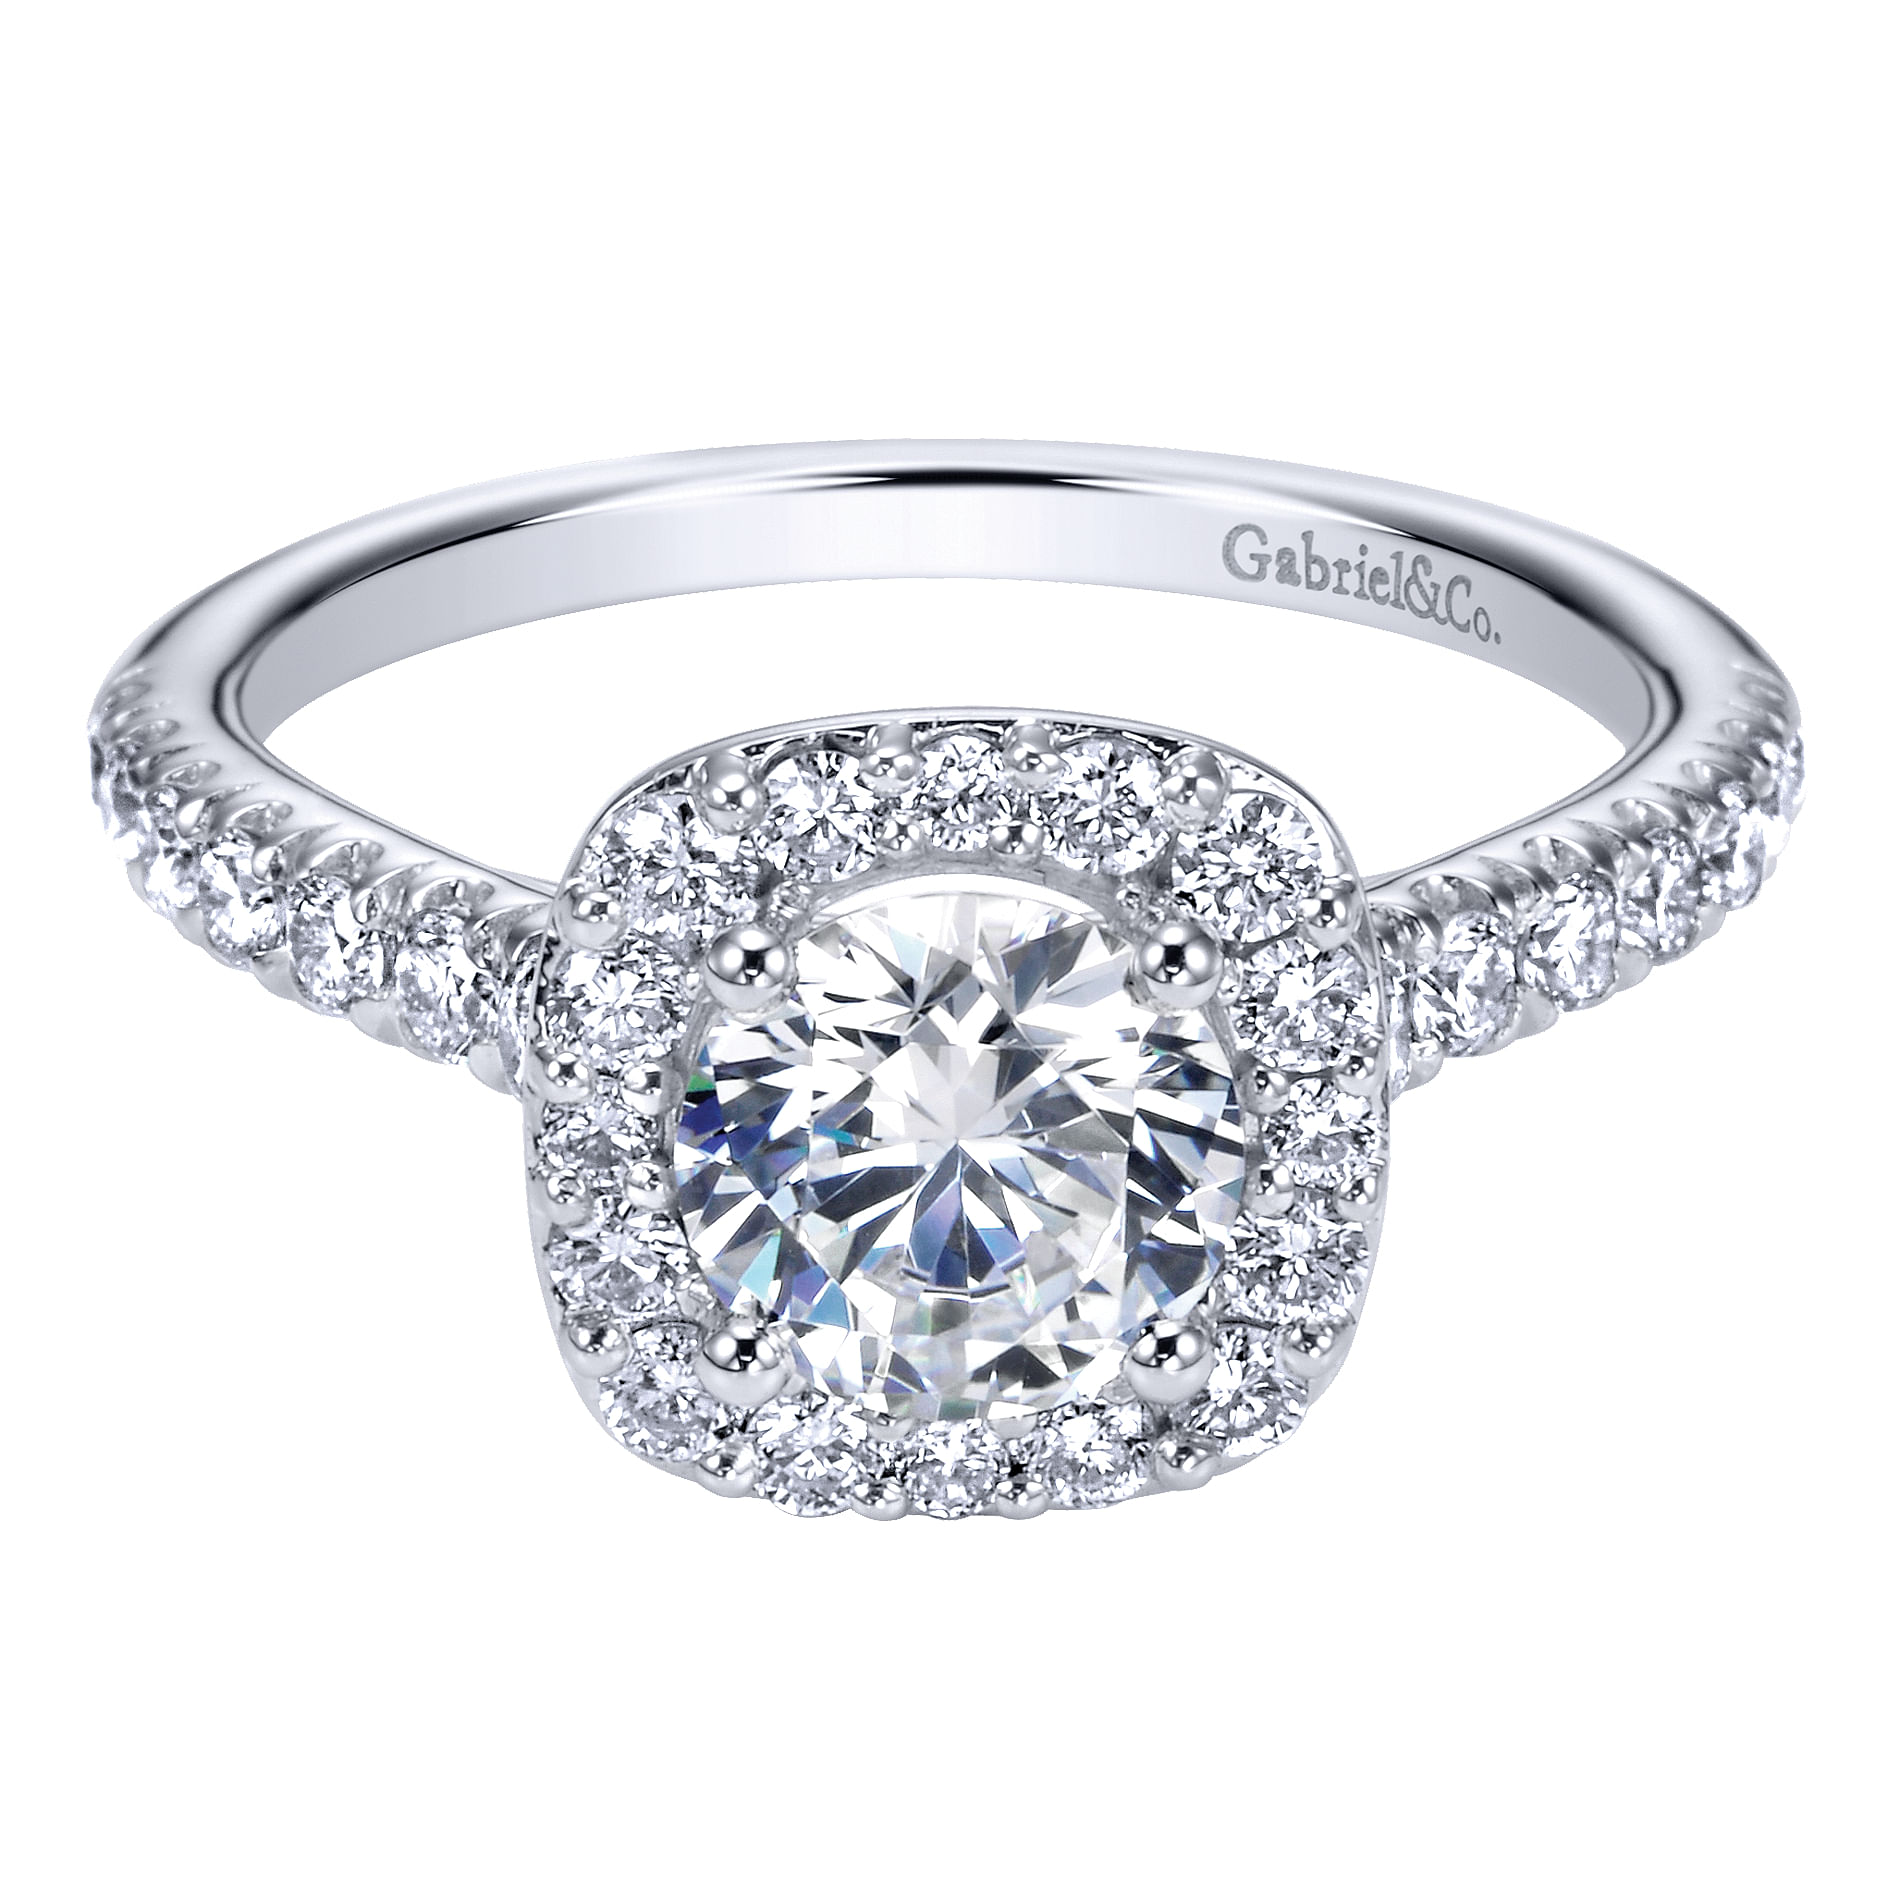 Lyla - 14K White Gold Round Halo Diamond Engagement Ring